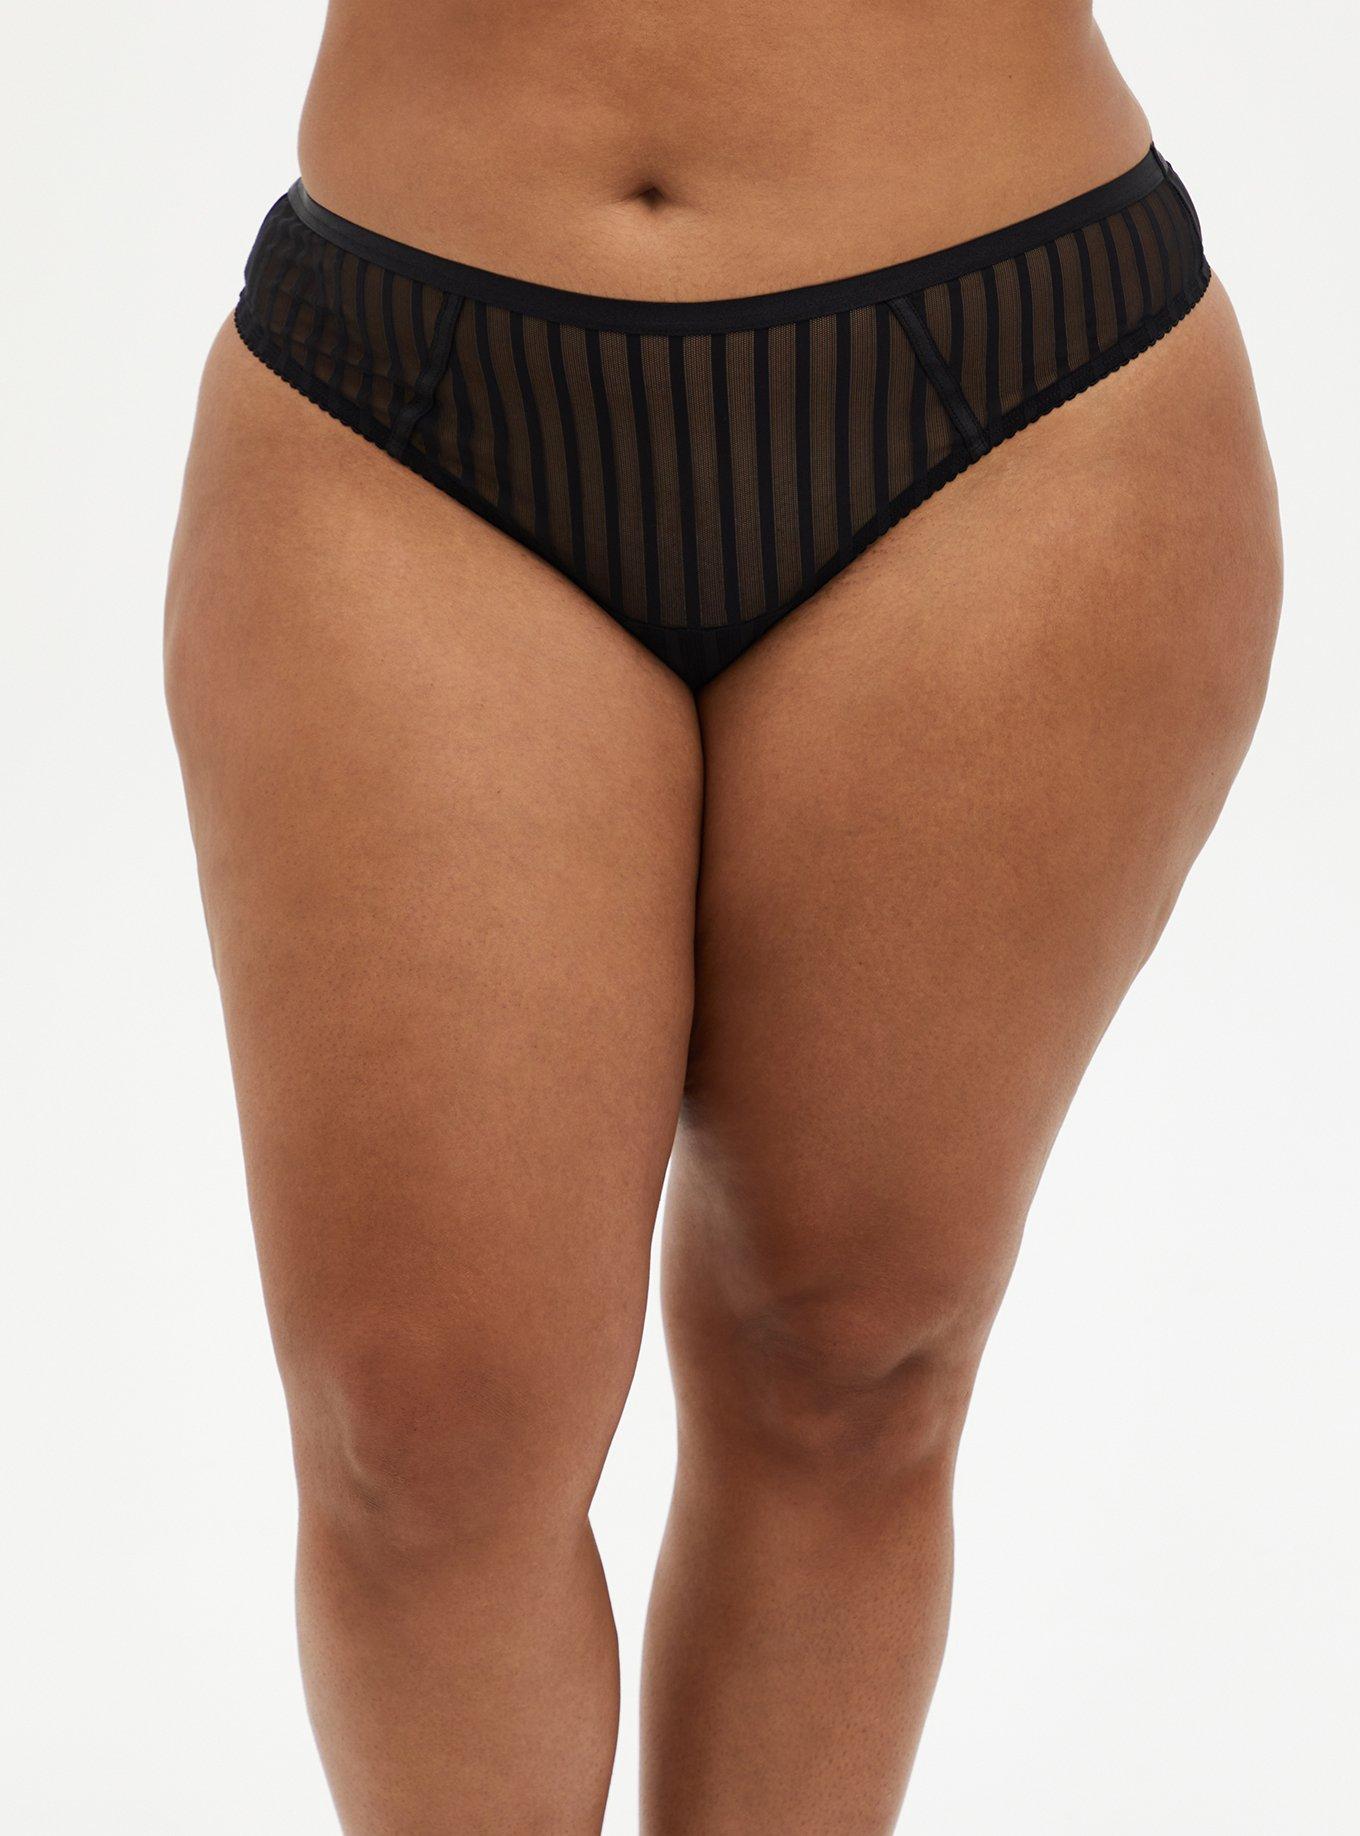 Plus Size - Black Striped Mesh Cut Out Thong Panty photo